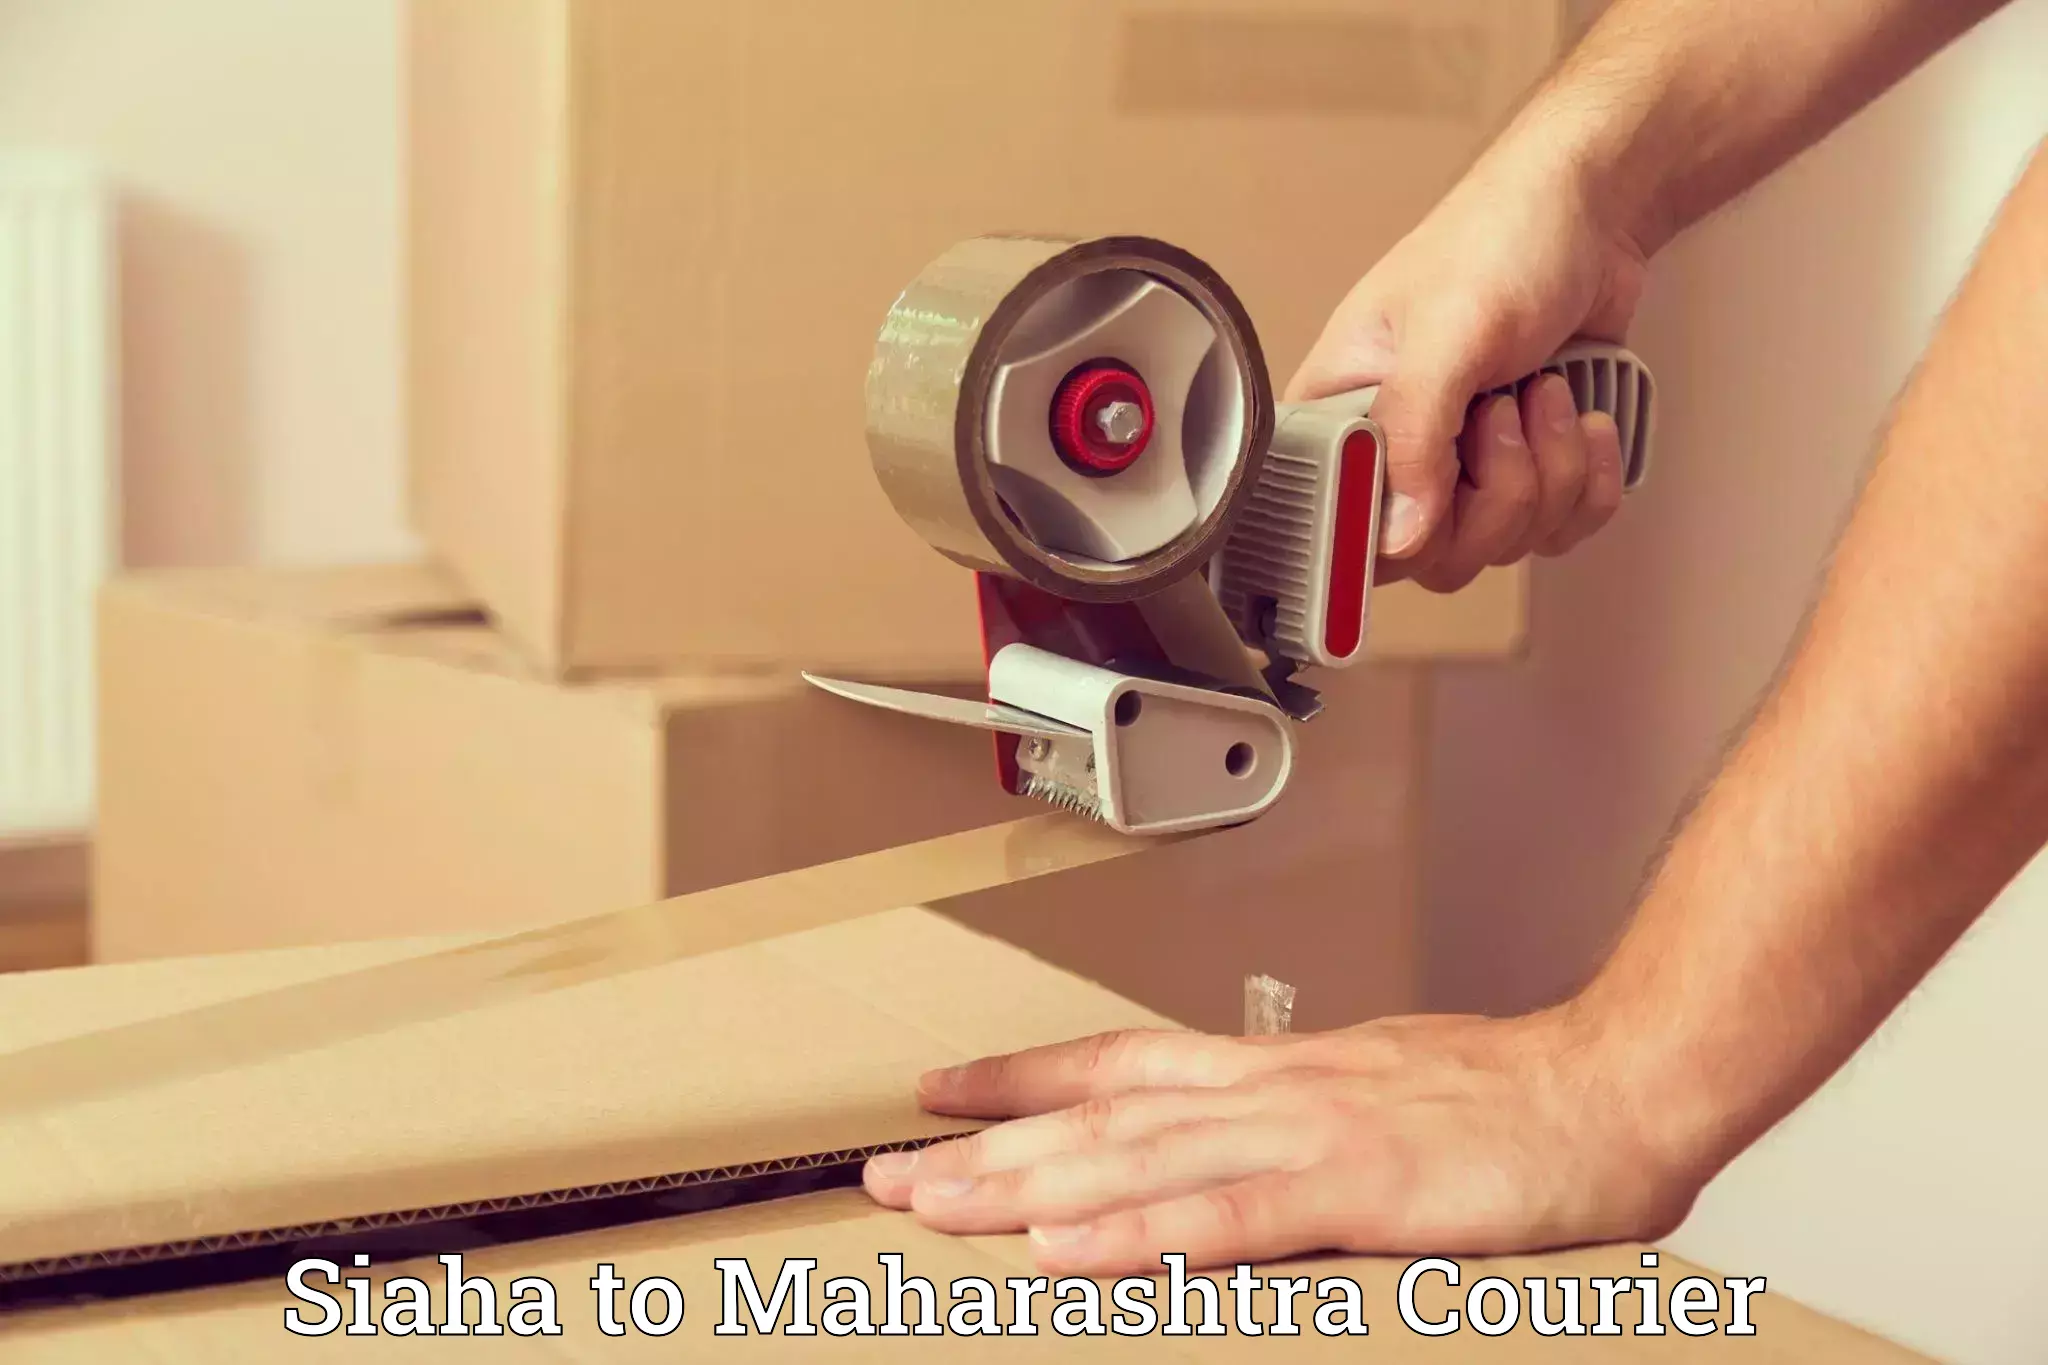 Budget-friendly movers in Siaha to Maharashtra